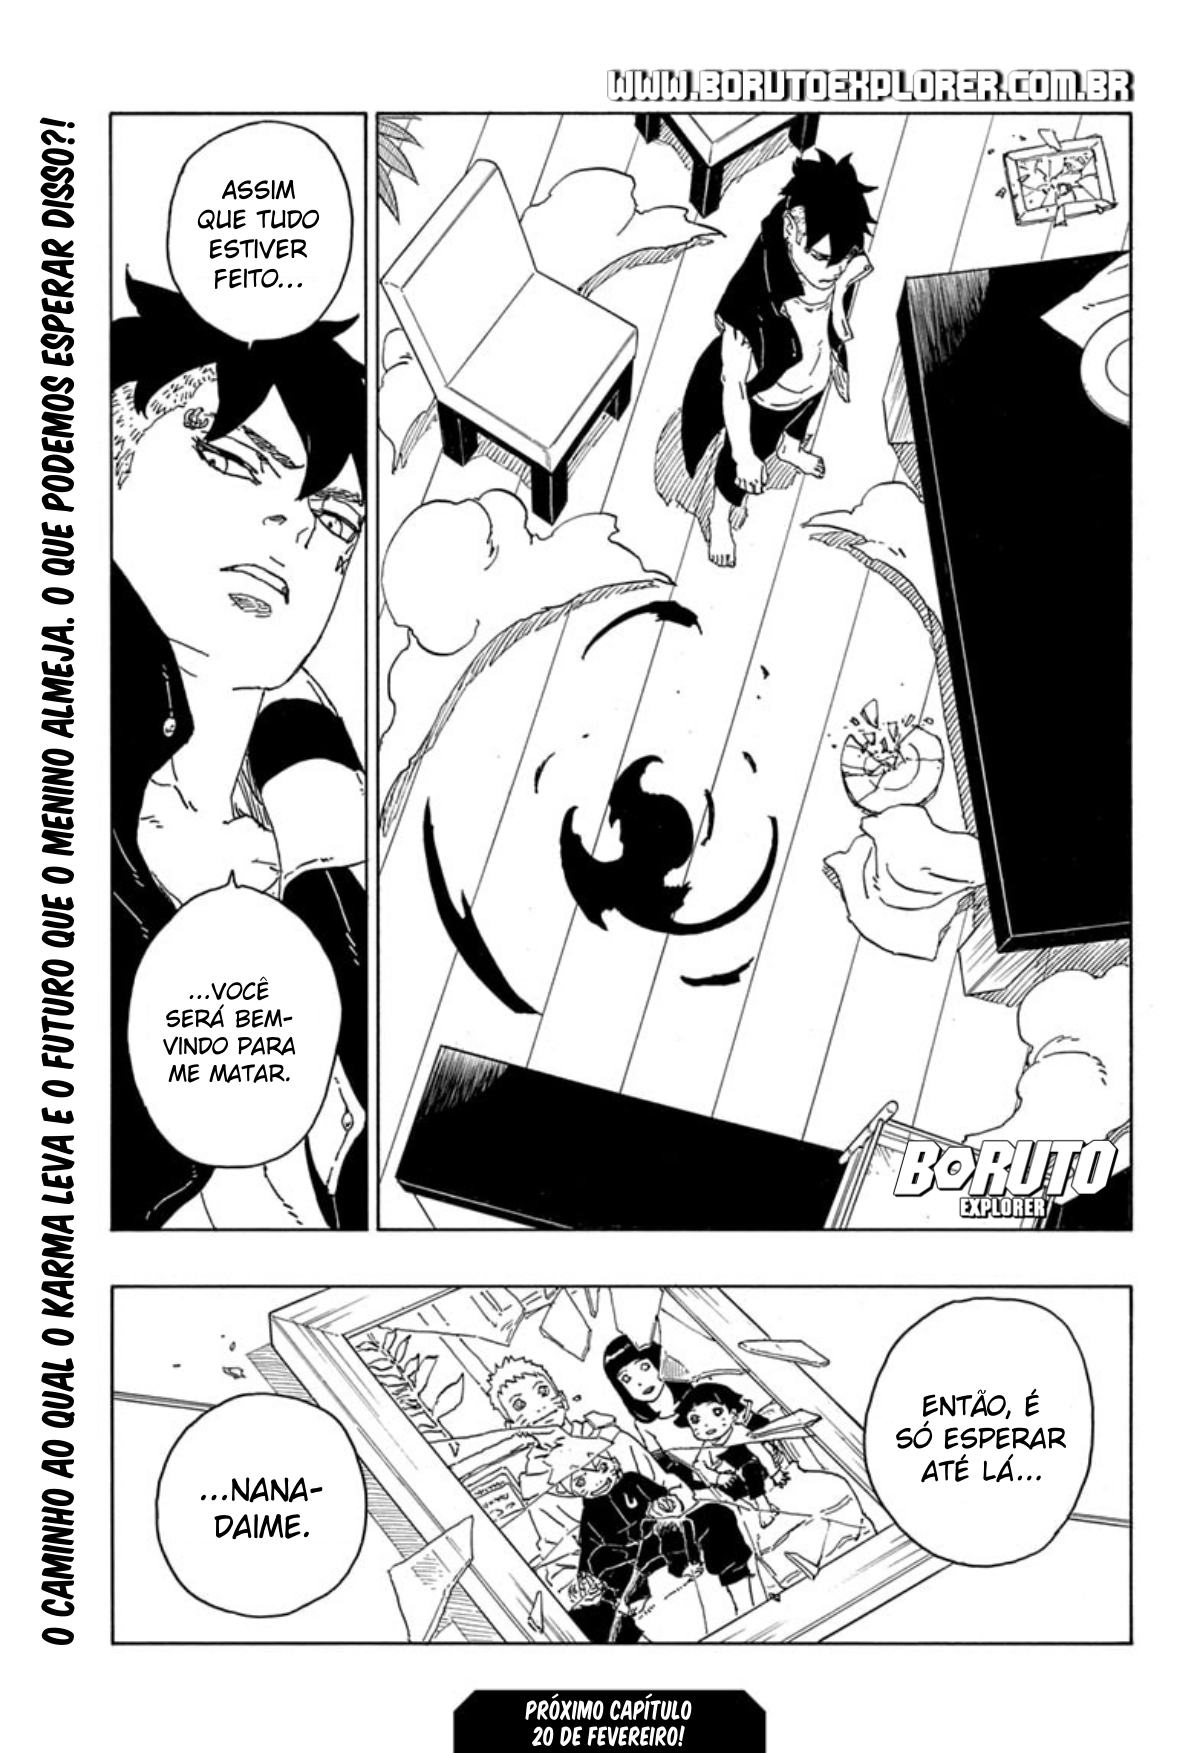 Boruto manga capítulo 77 041